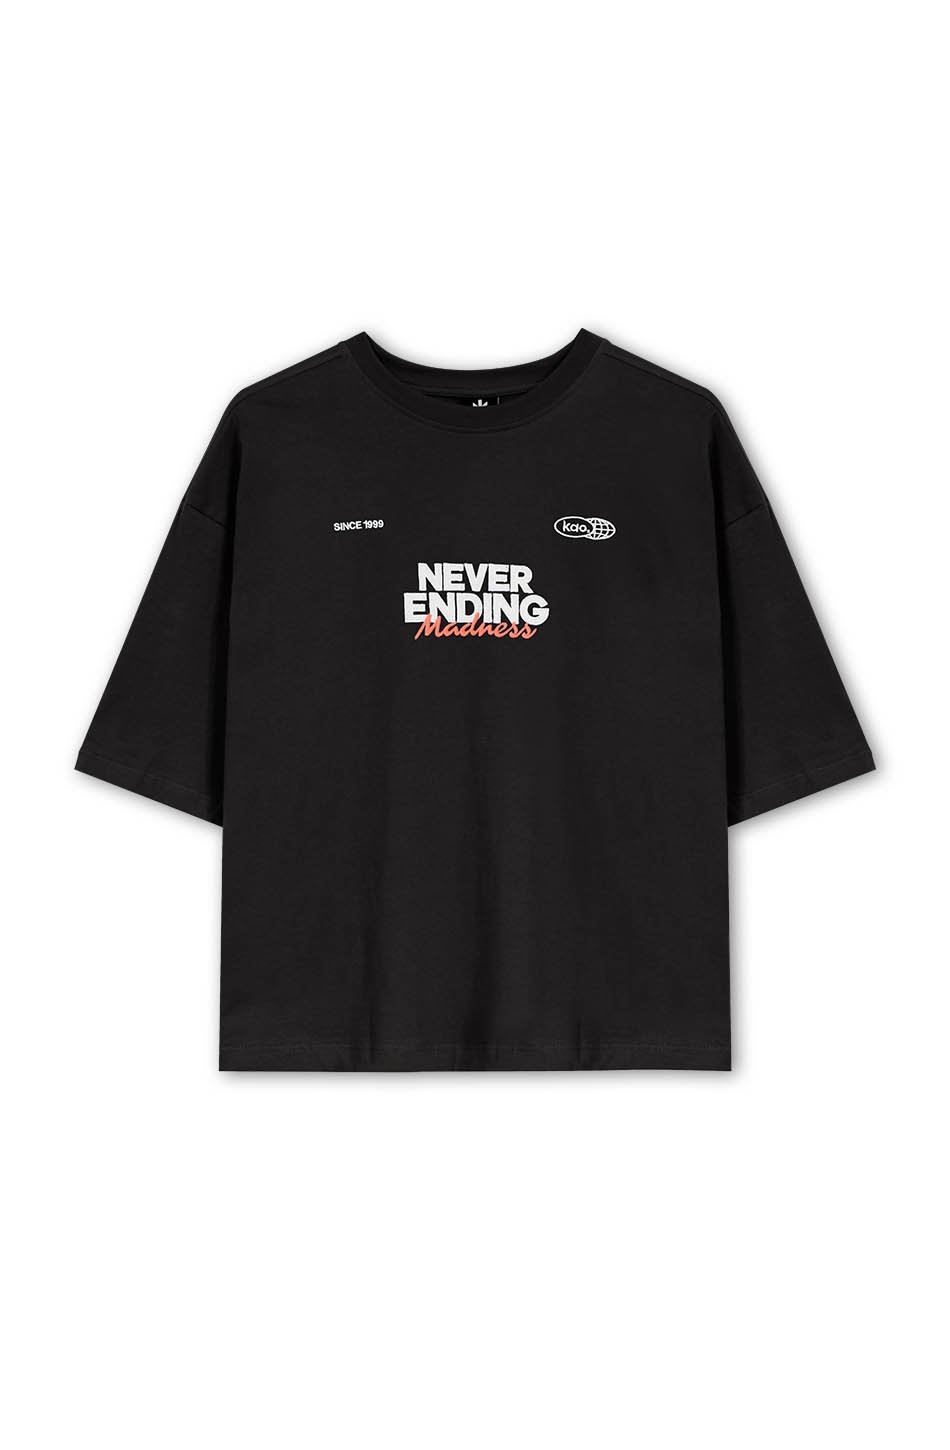 Never Ending Black T-shirt